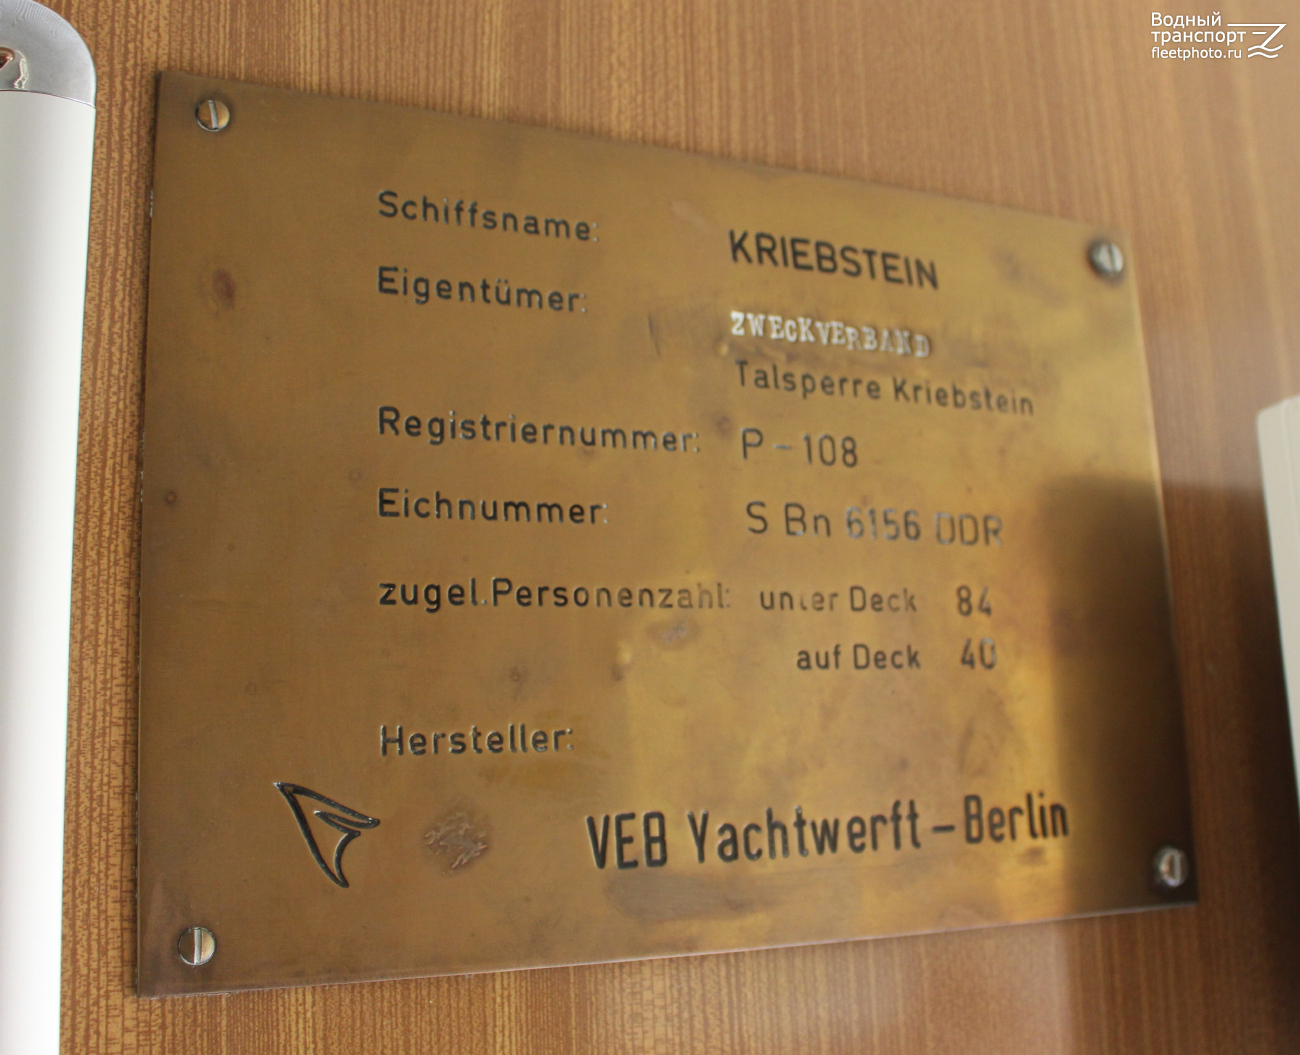 Kriebstein. Shipbuilder's Makers Plates